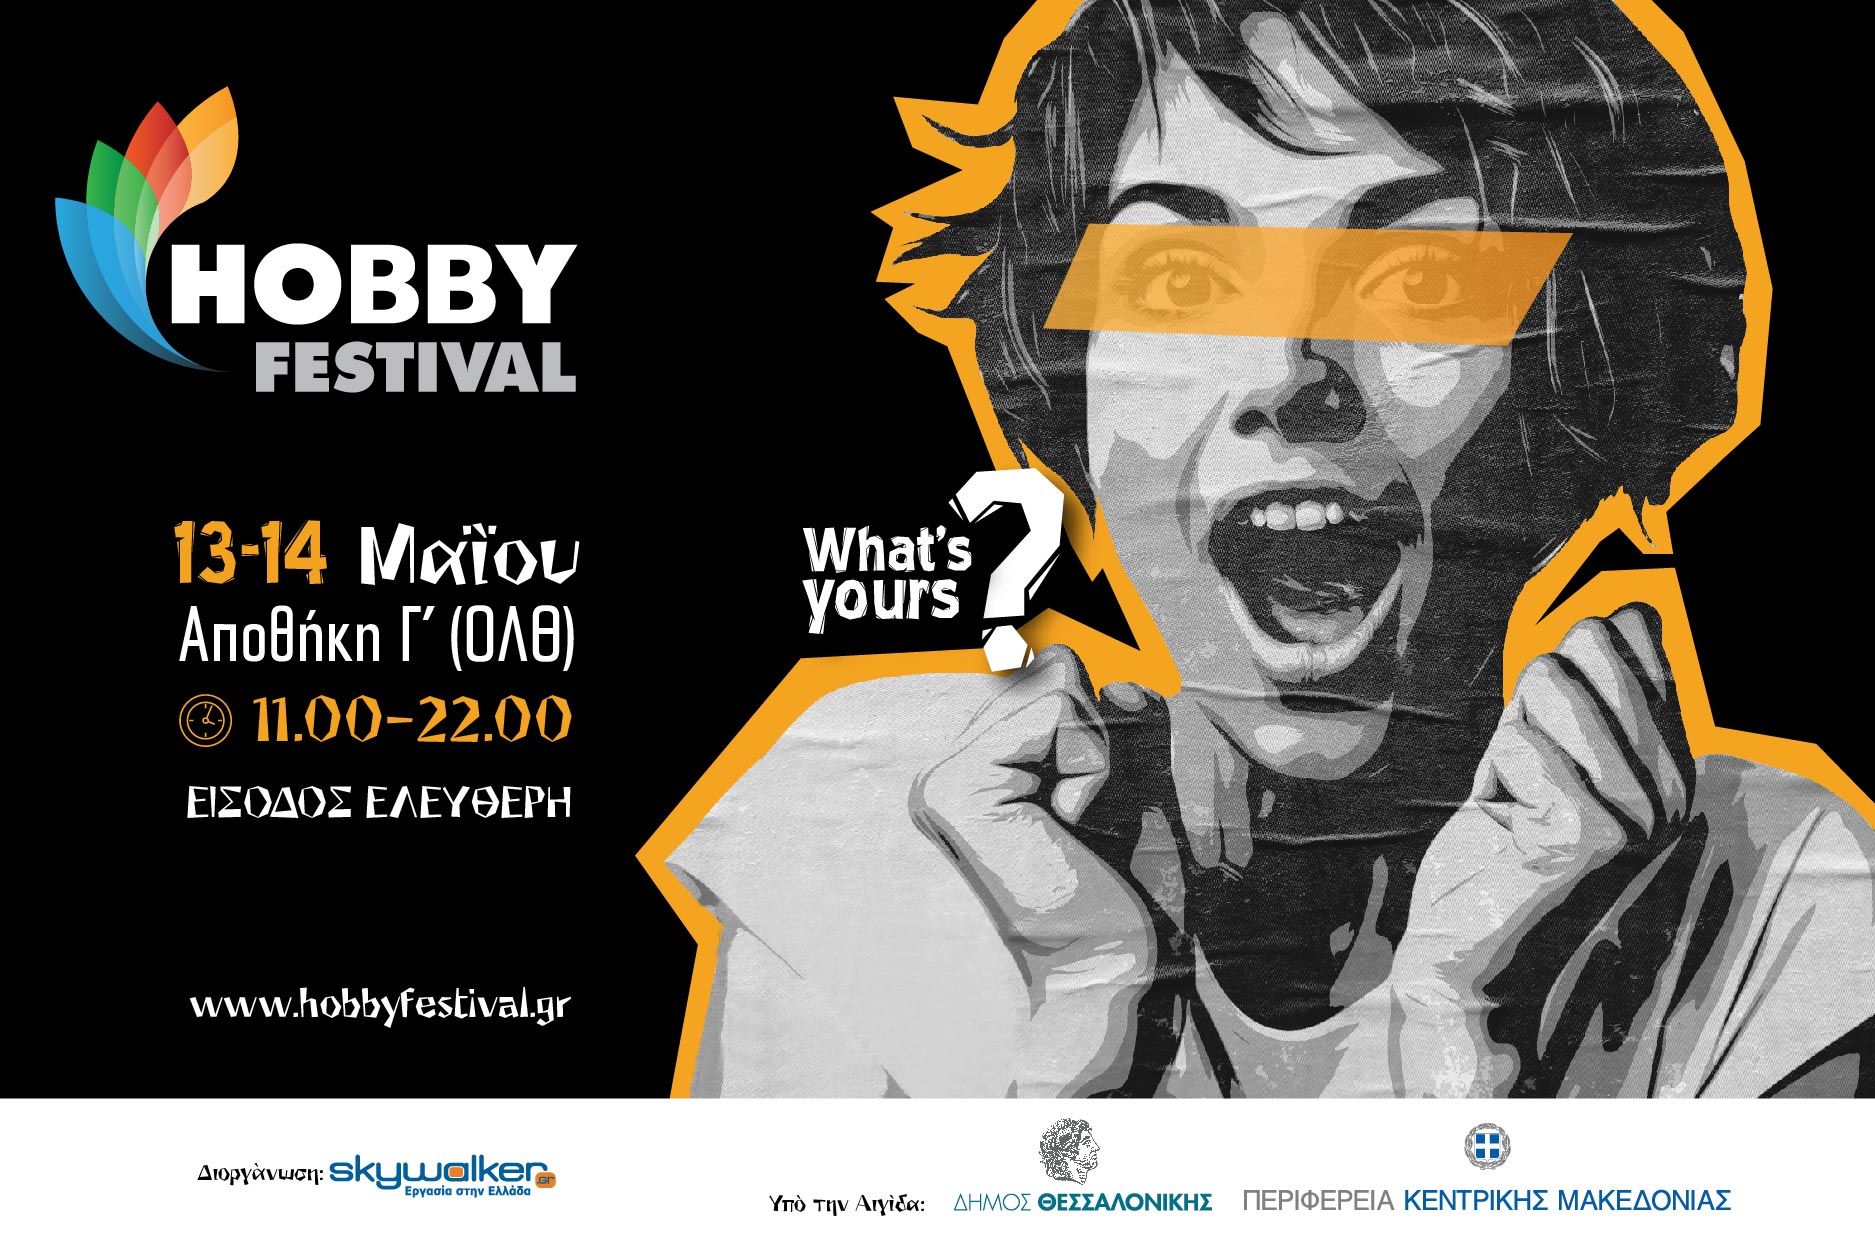 Έρχεται το Hobby Festival στη Θεσσαλονίκη